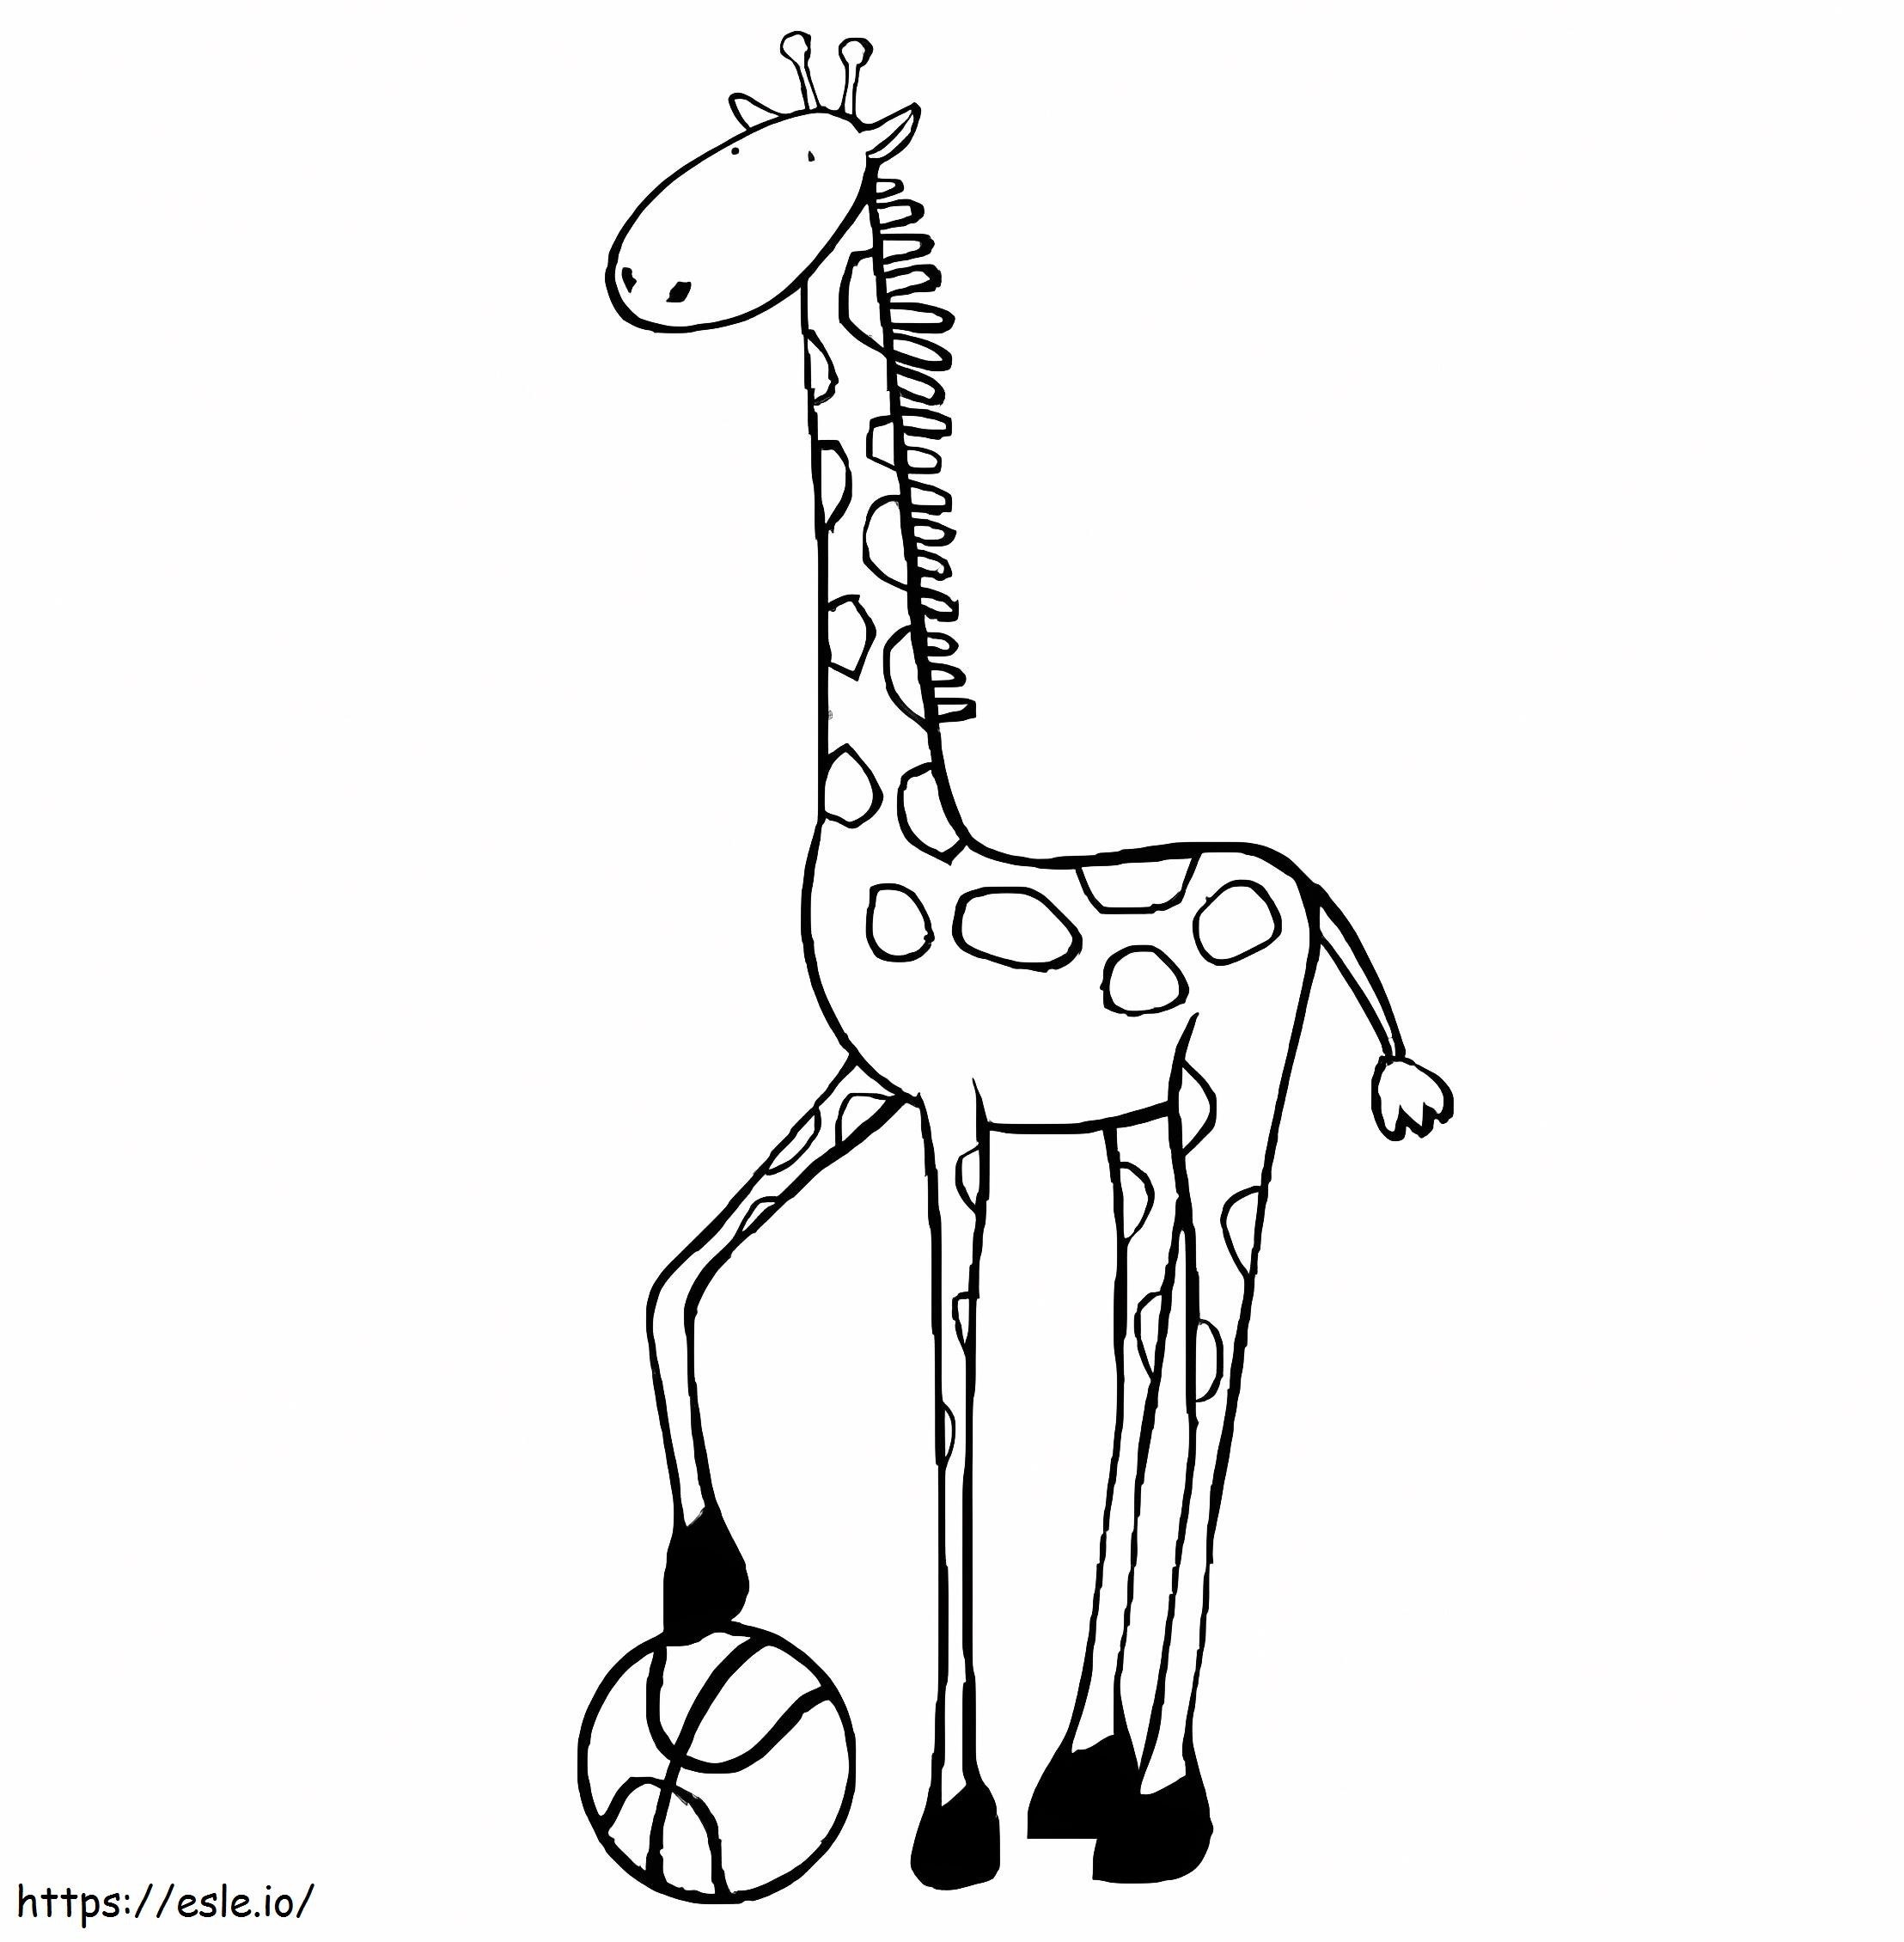 Giraffa Con La Palla da colorare